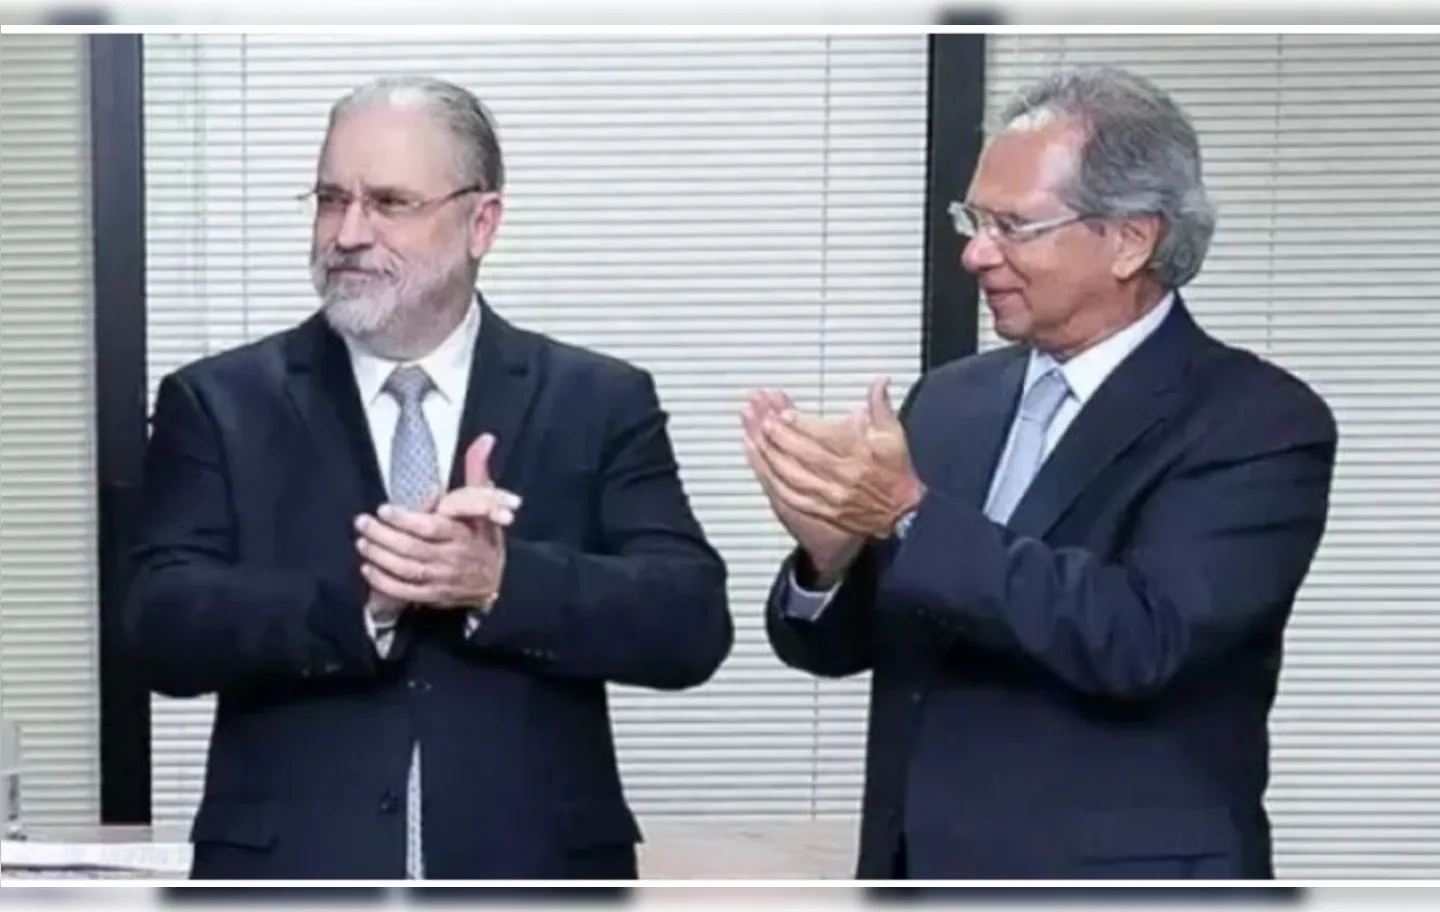 Pedidos do delegado da PF contra Aras, Guedes e Figueiredo foram negados pelo ministro Luis Roberto Barroso, relator do inquérito no STF